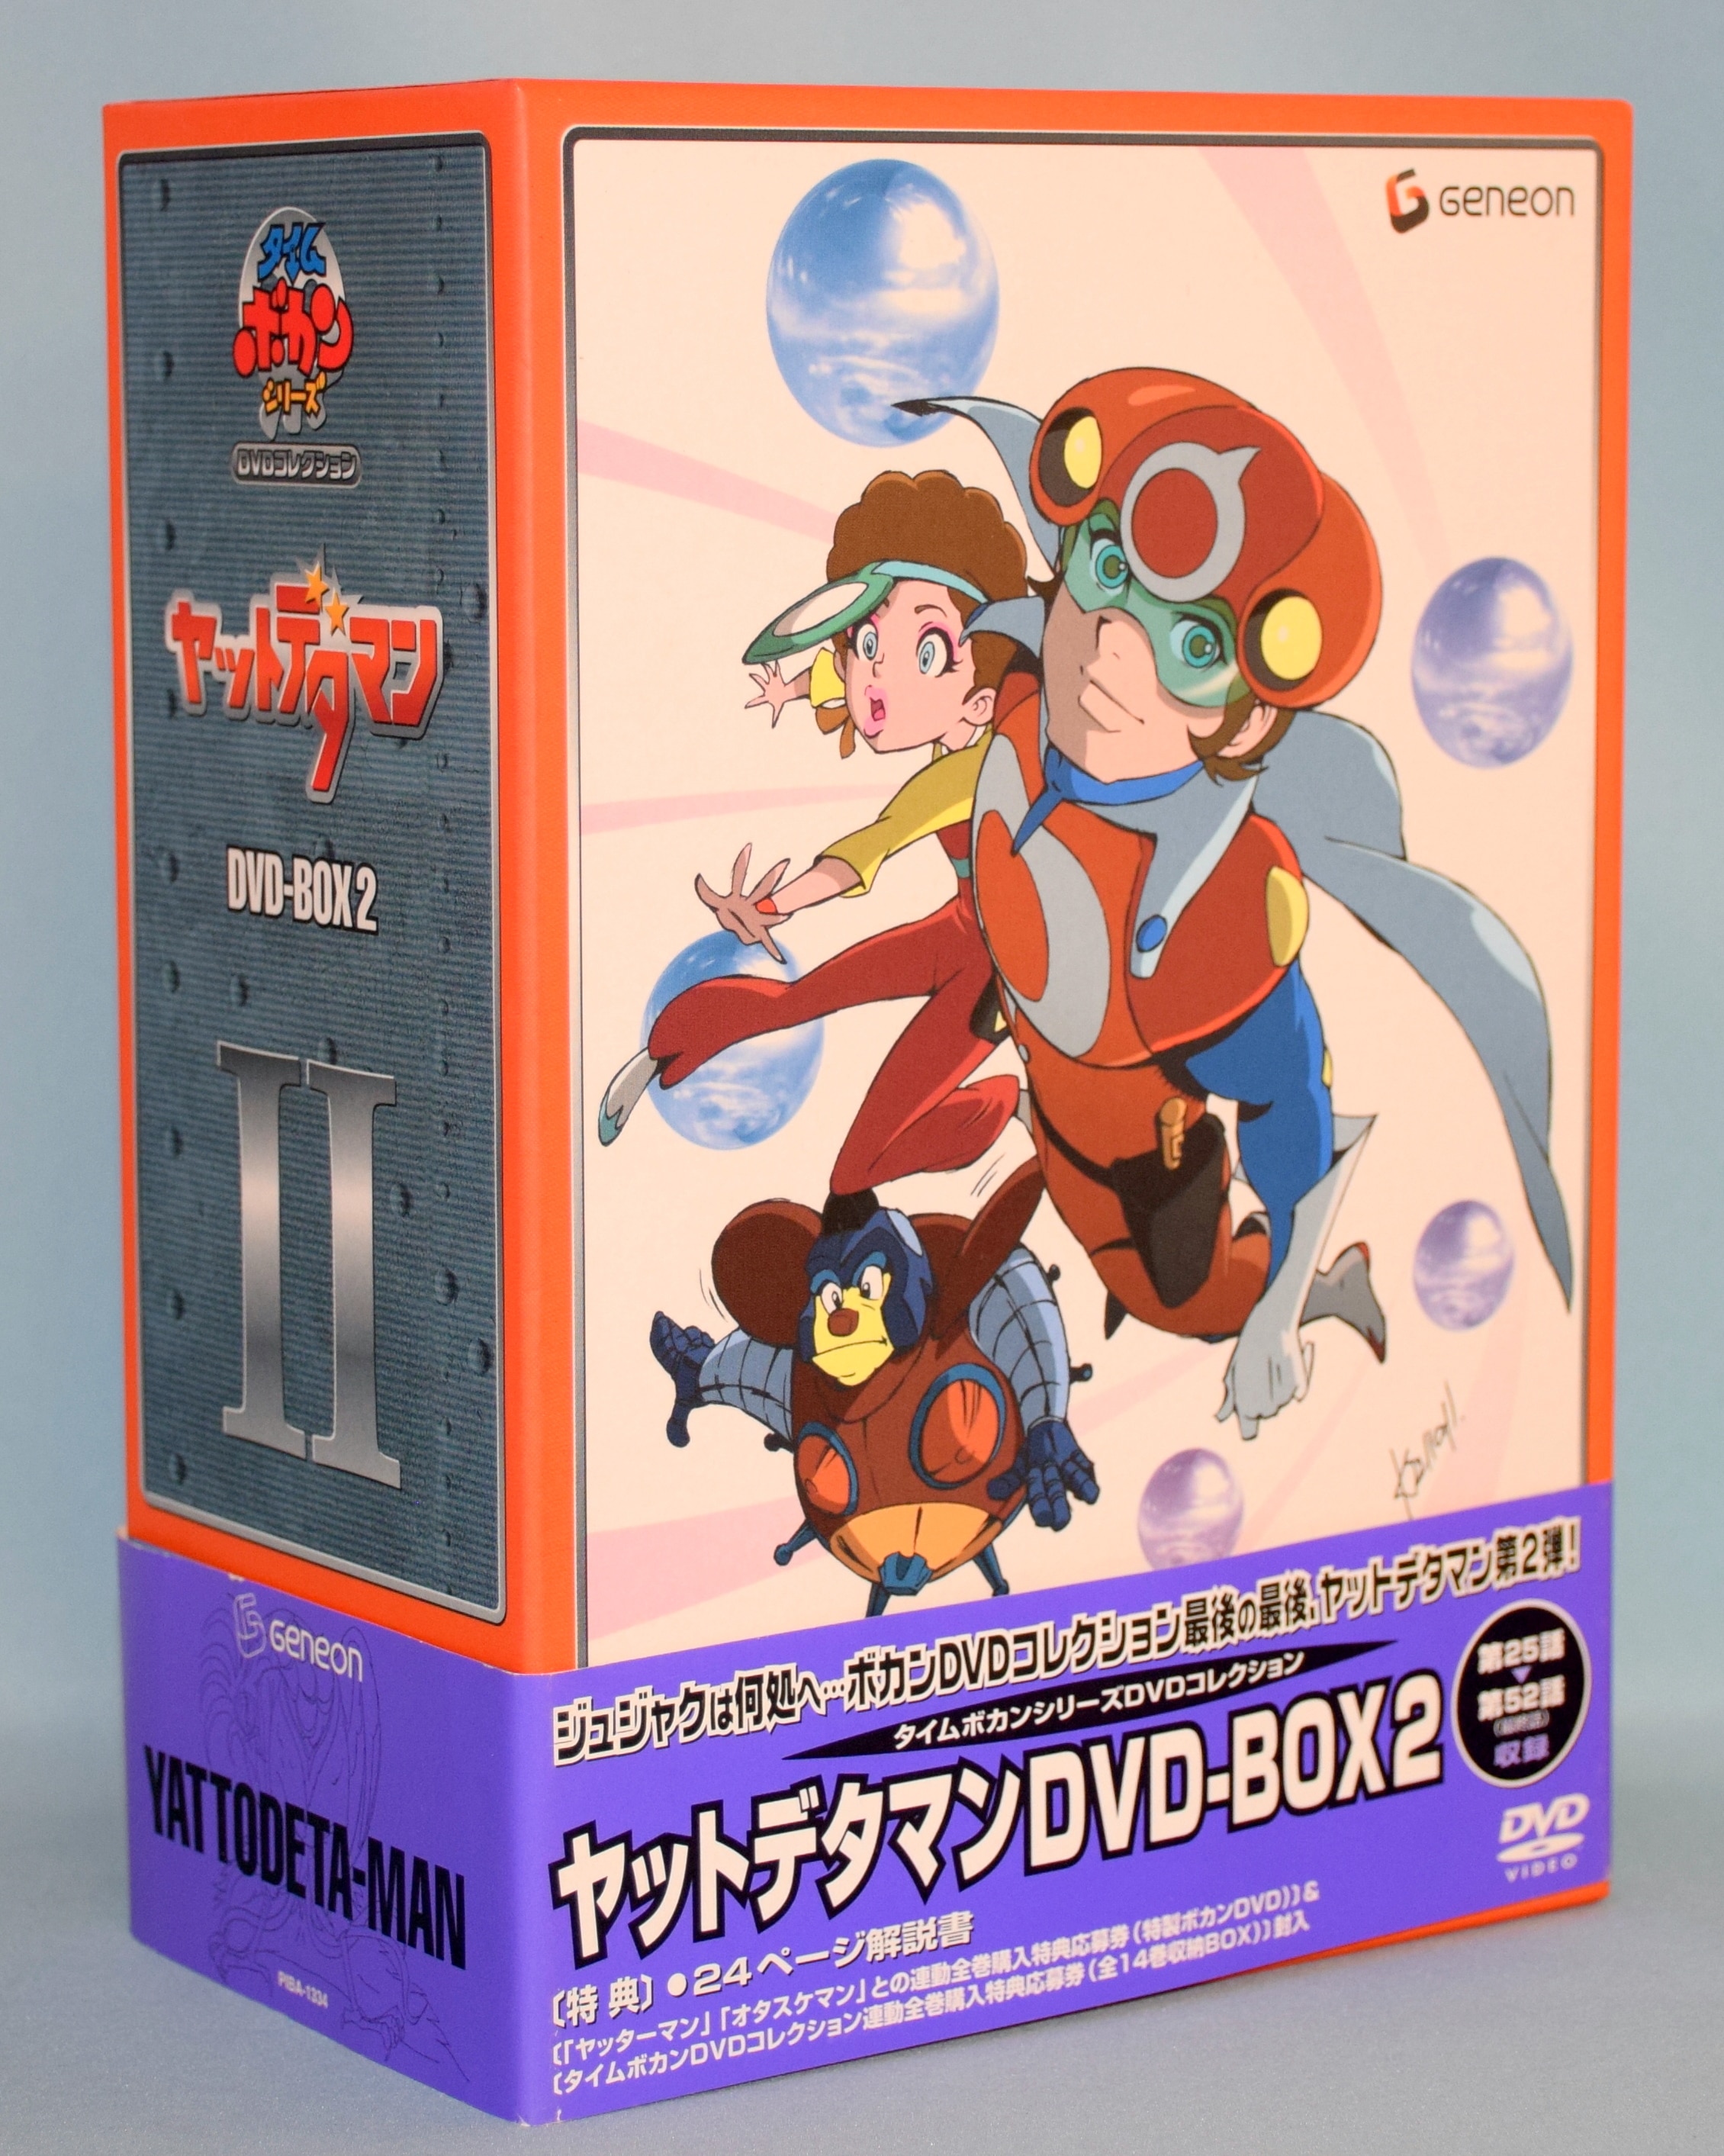 その他ヤットデタマン DVD-BOX 2 cm3dmju